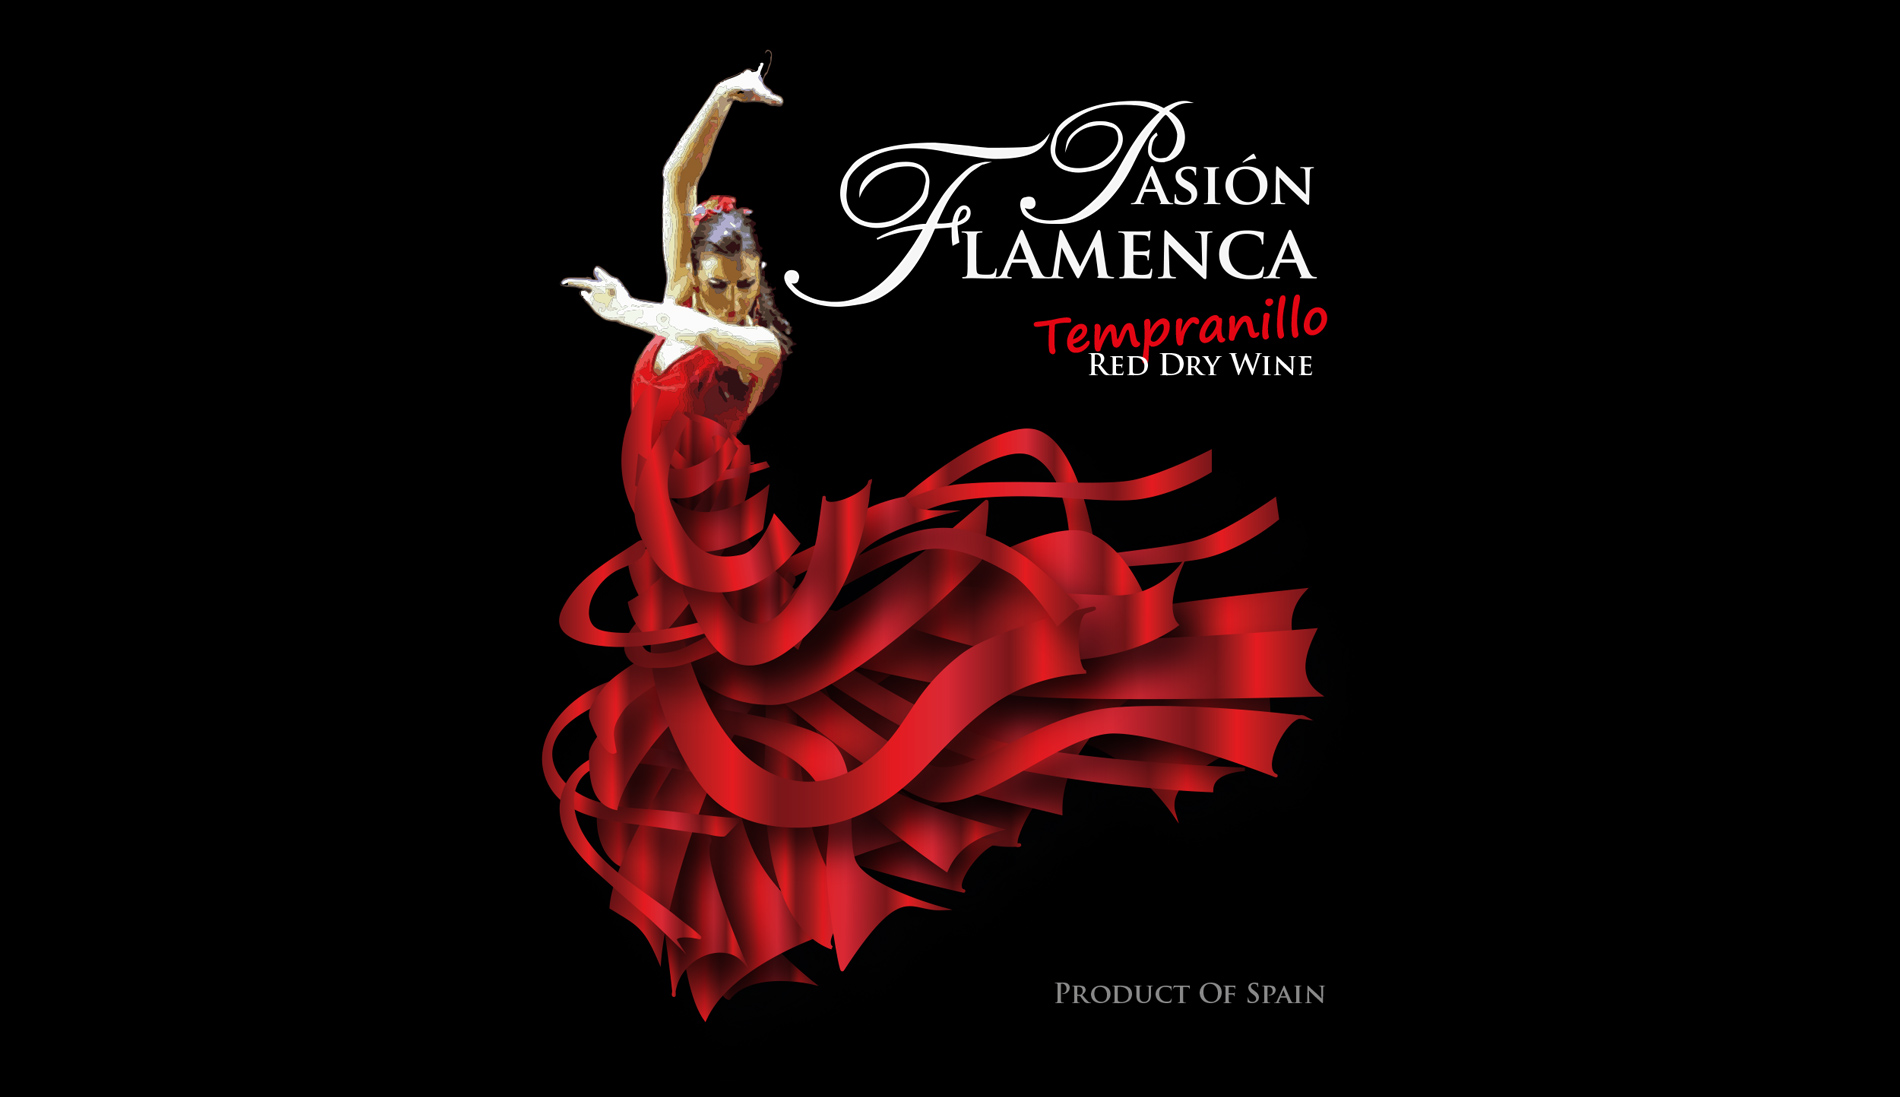 Diseño gráfico y creativo de etiquetas y packaging de vino para PASIÓN FLAMENCA